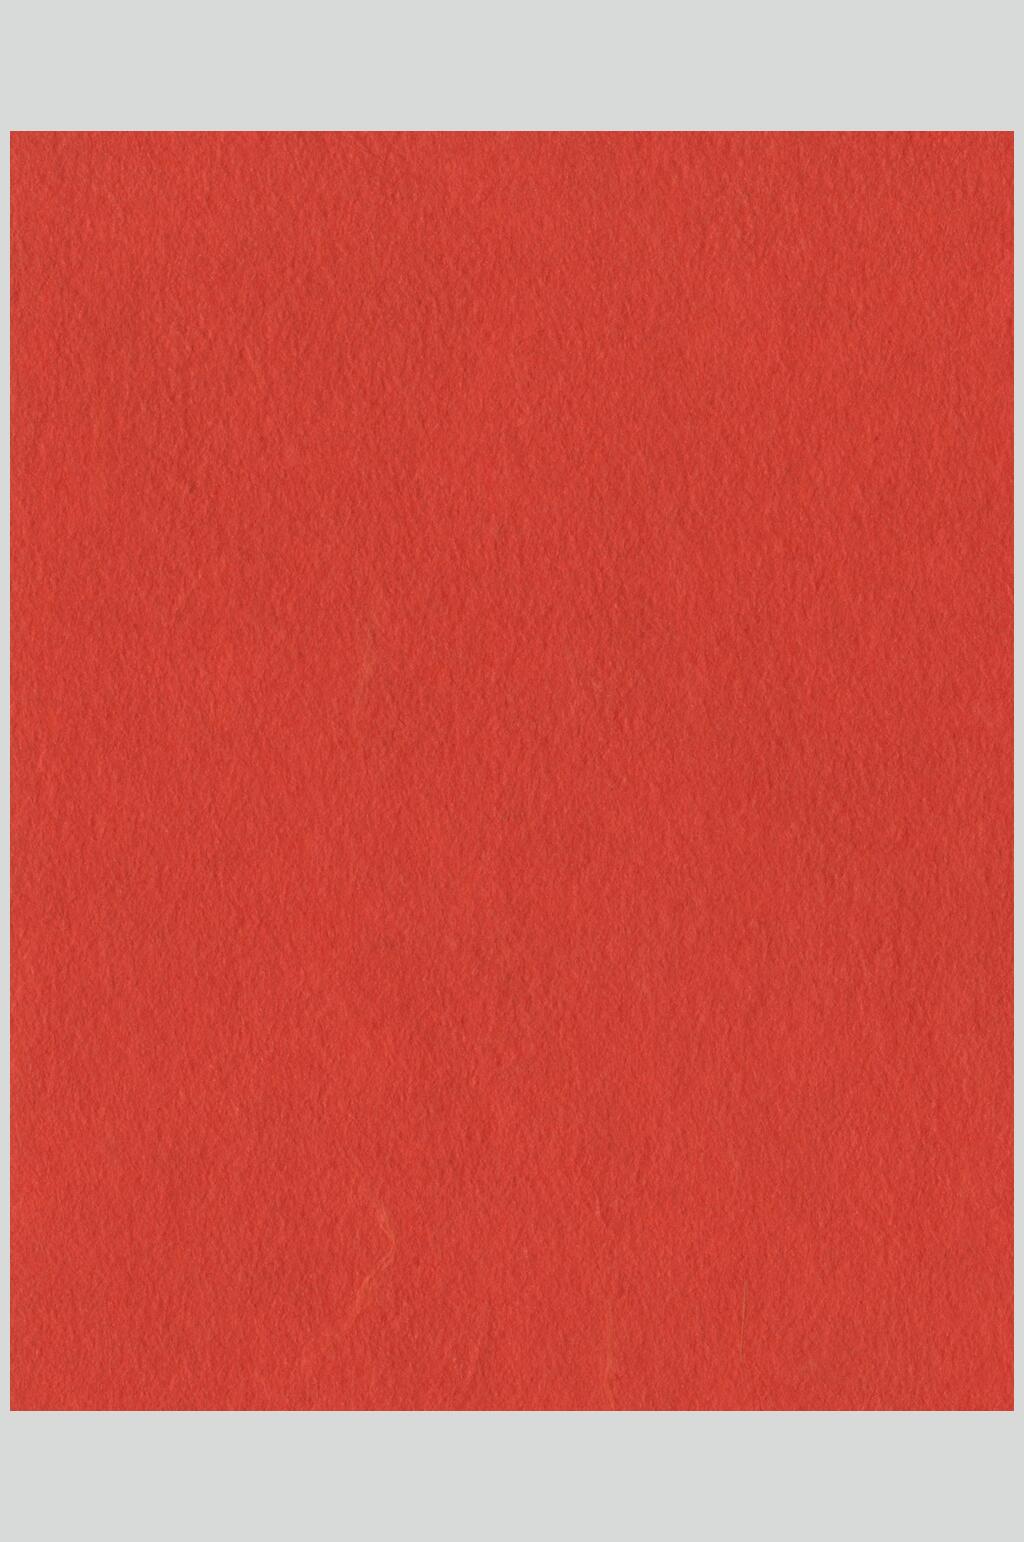 朱砂红纯色背景图图片